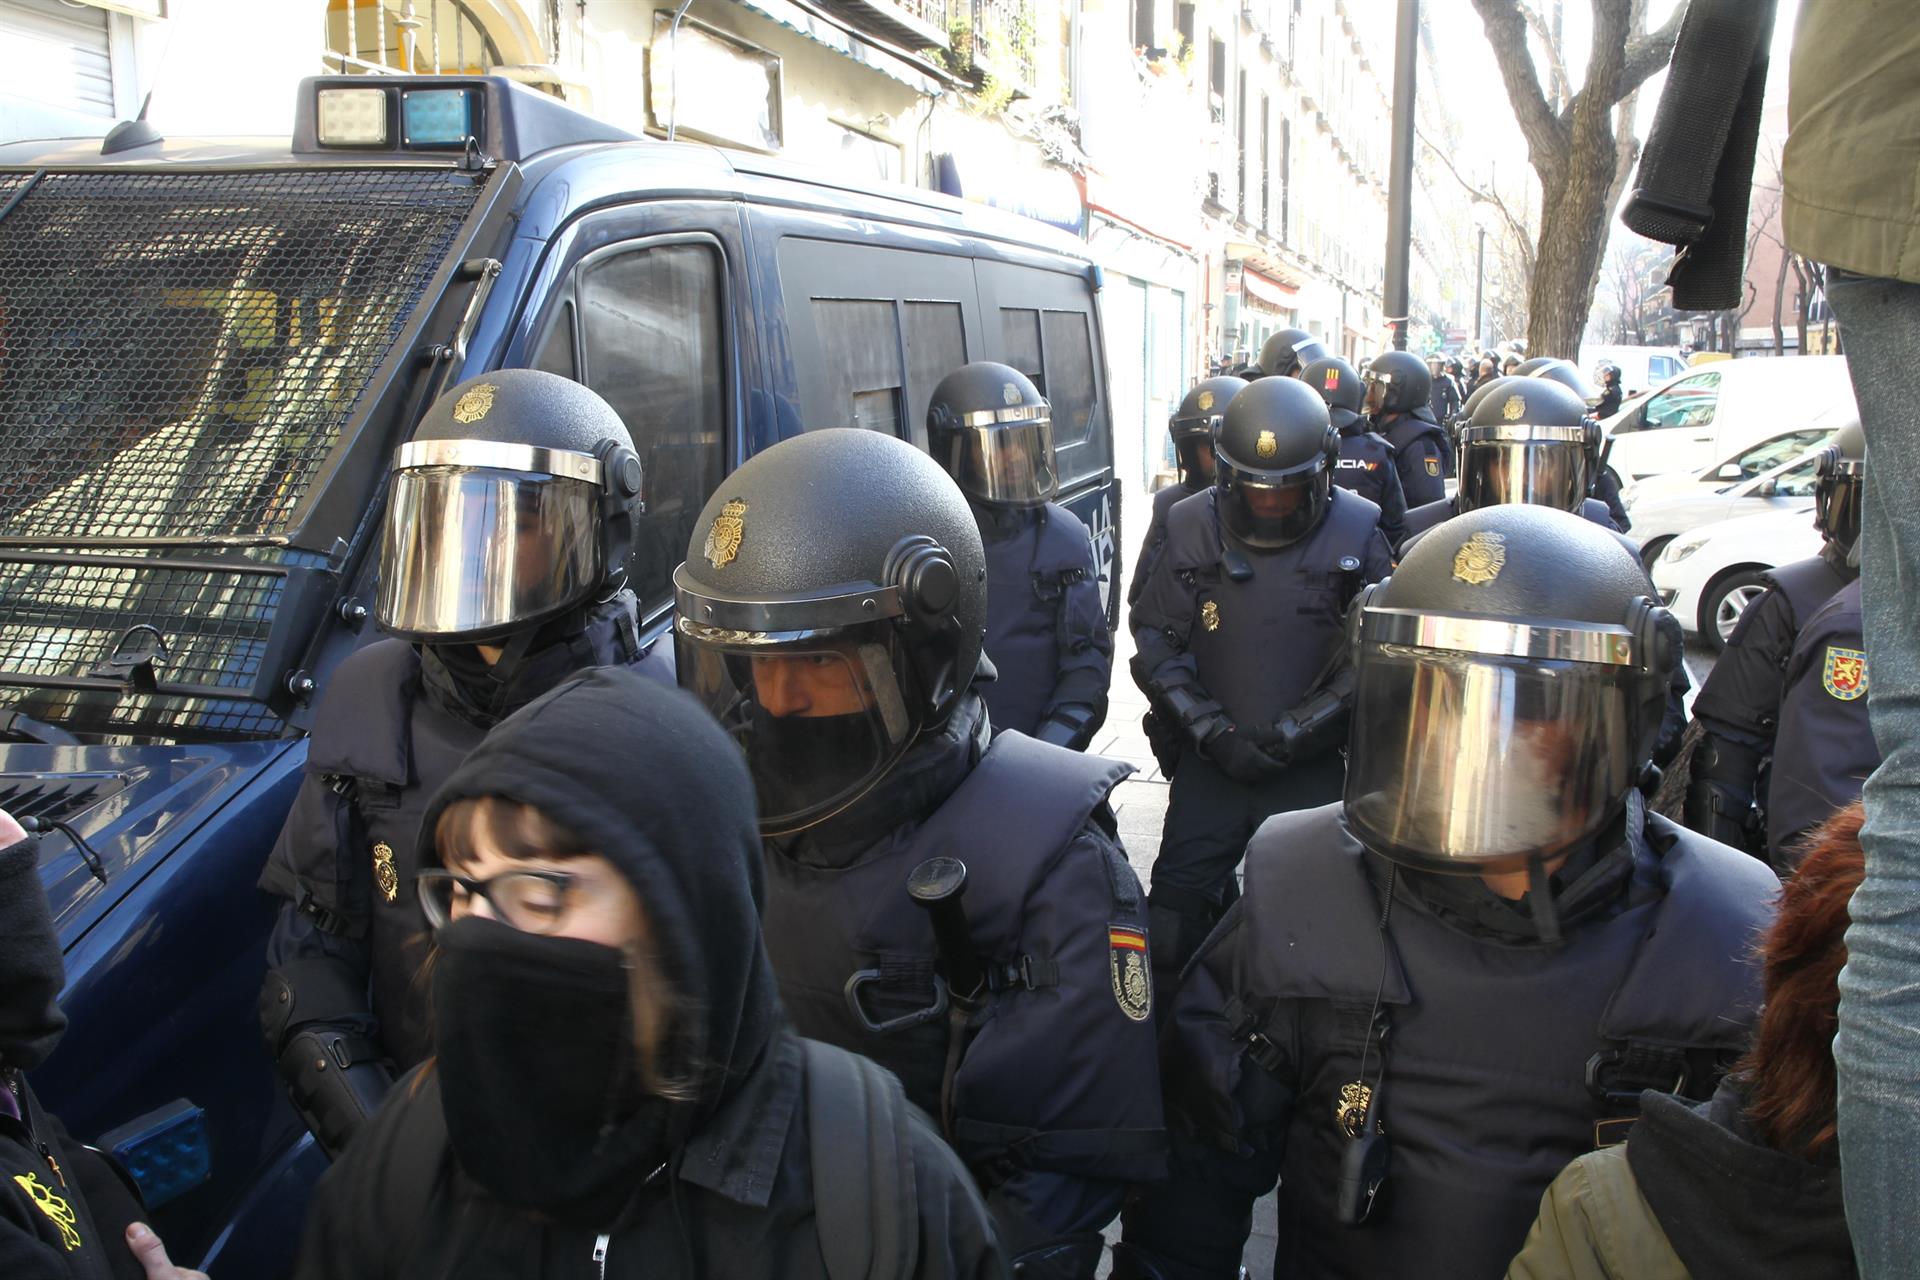 Tensión entre activistas y Policía en el intento de paralizar cuatro desahucios en un edificio de Madrid